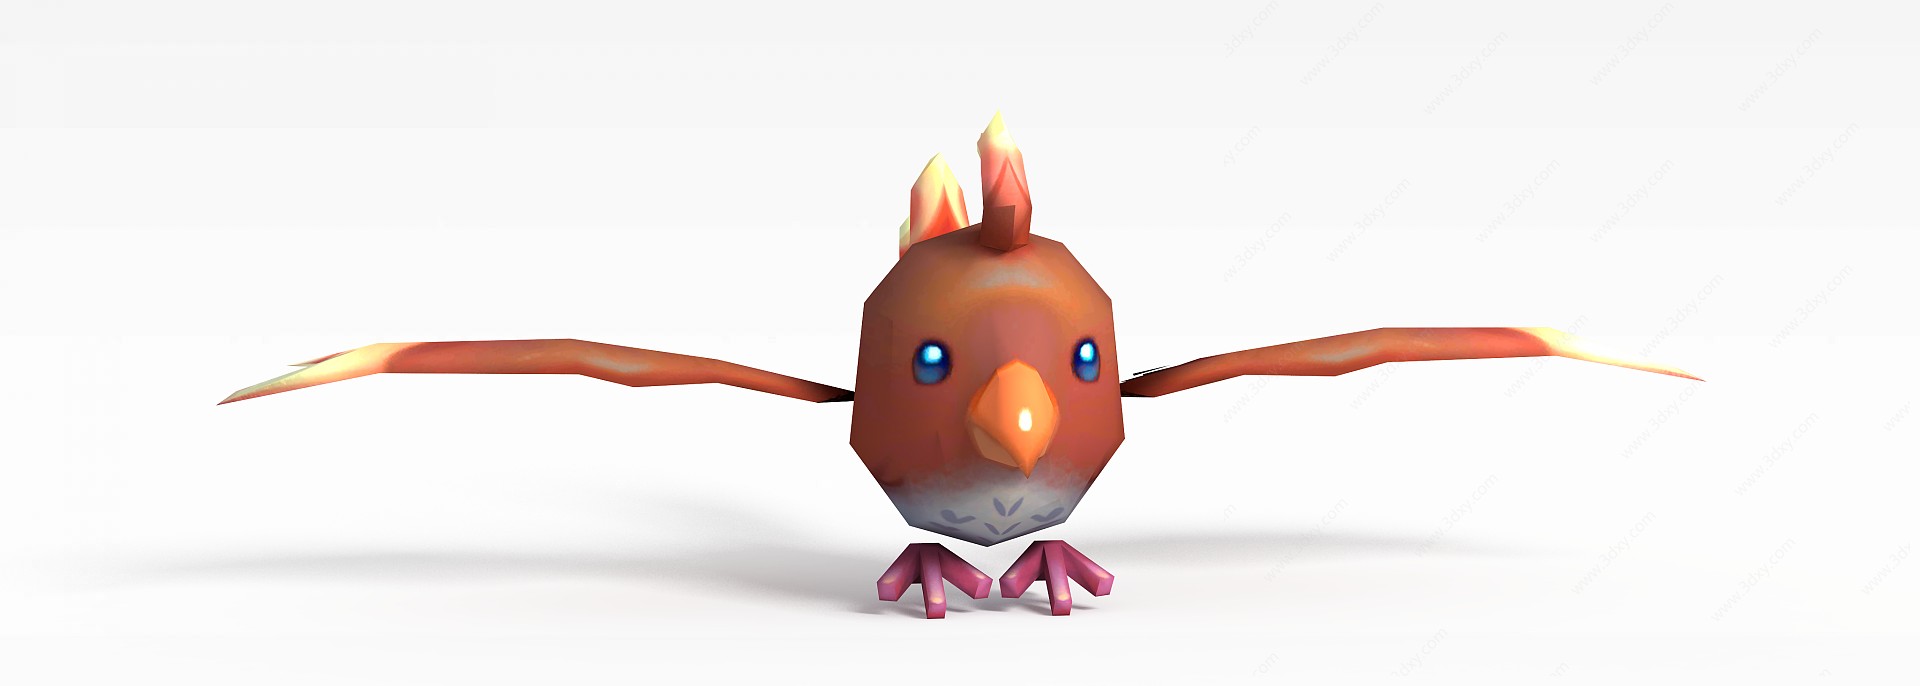 手游角色动物小鸟3D模型